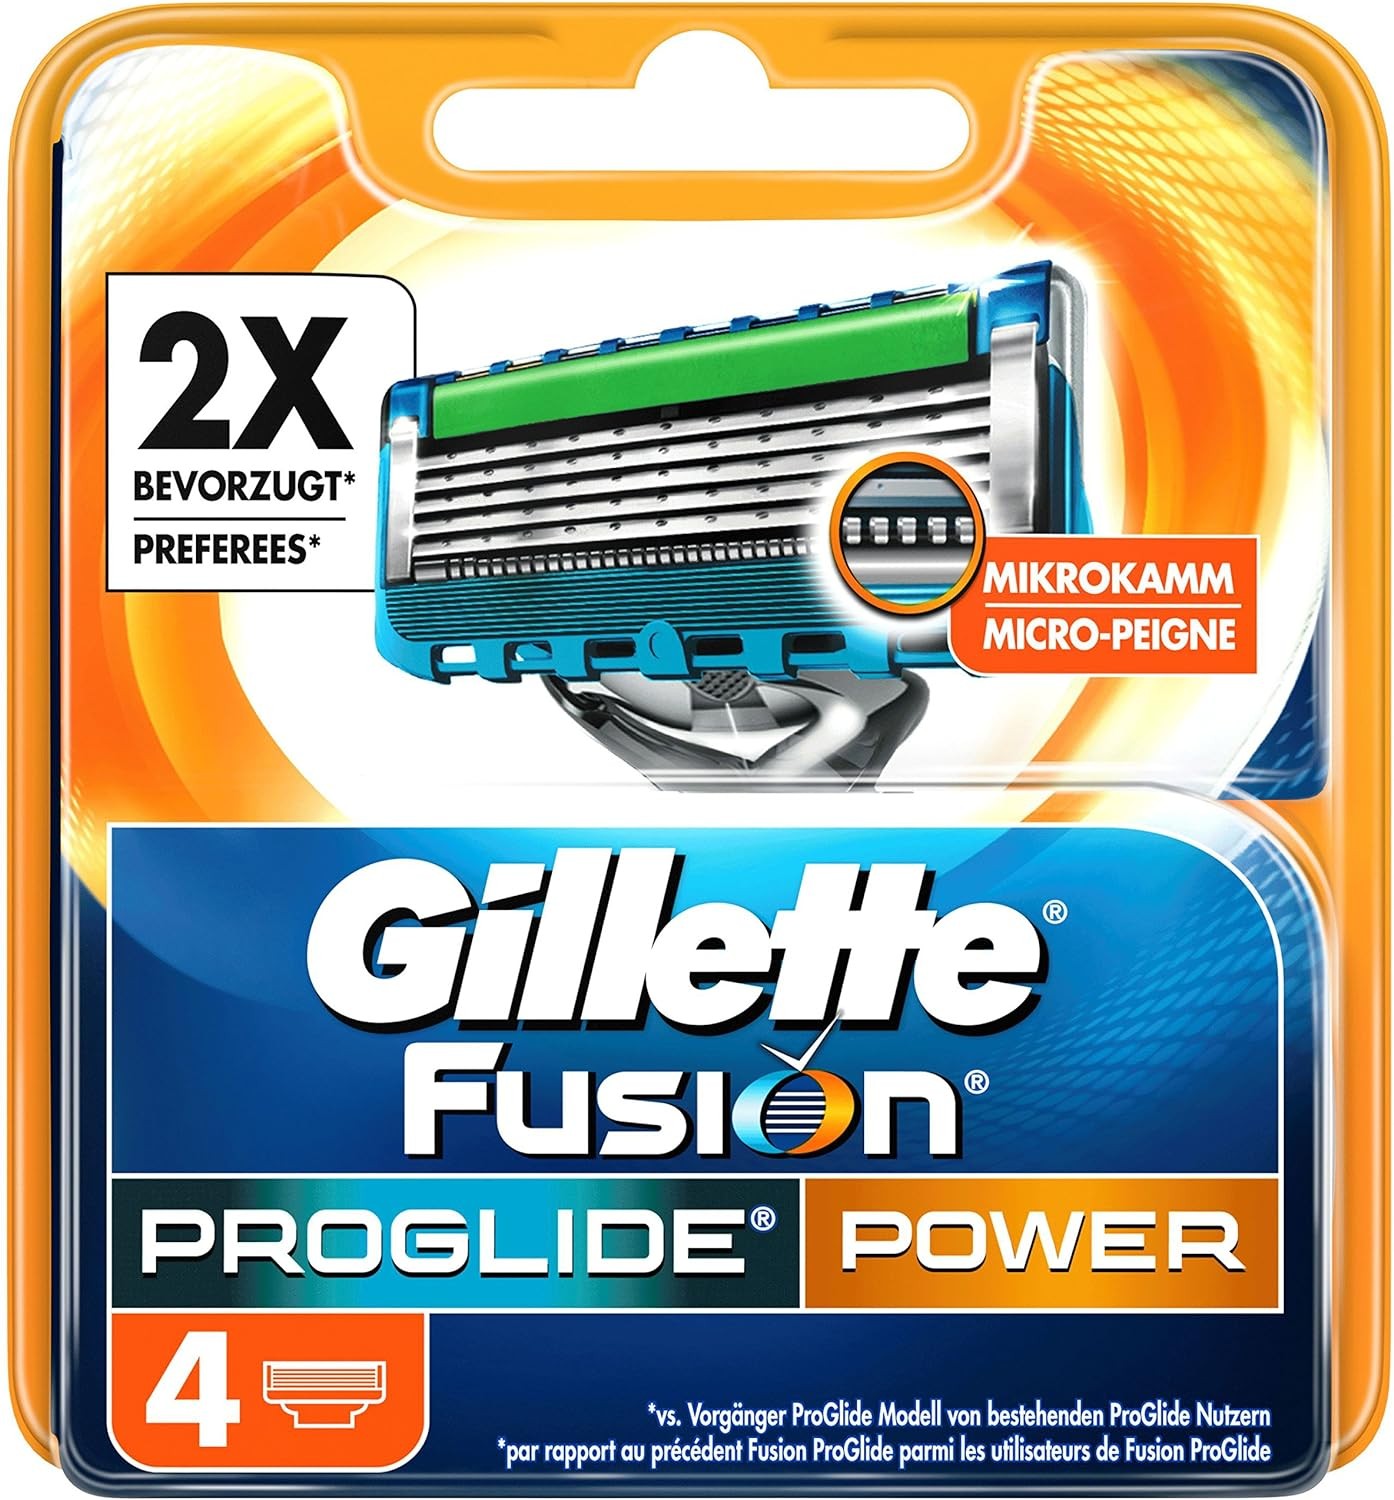 Gillette Razor Fusion, Proglide Power, 4's